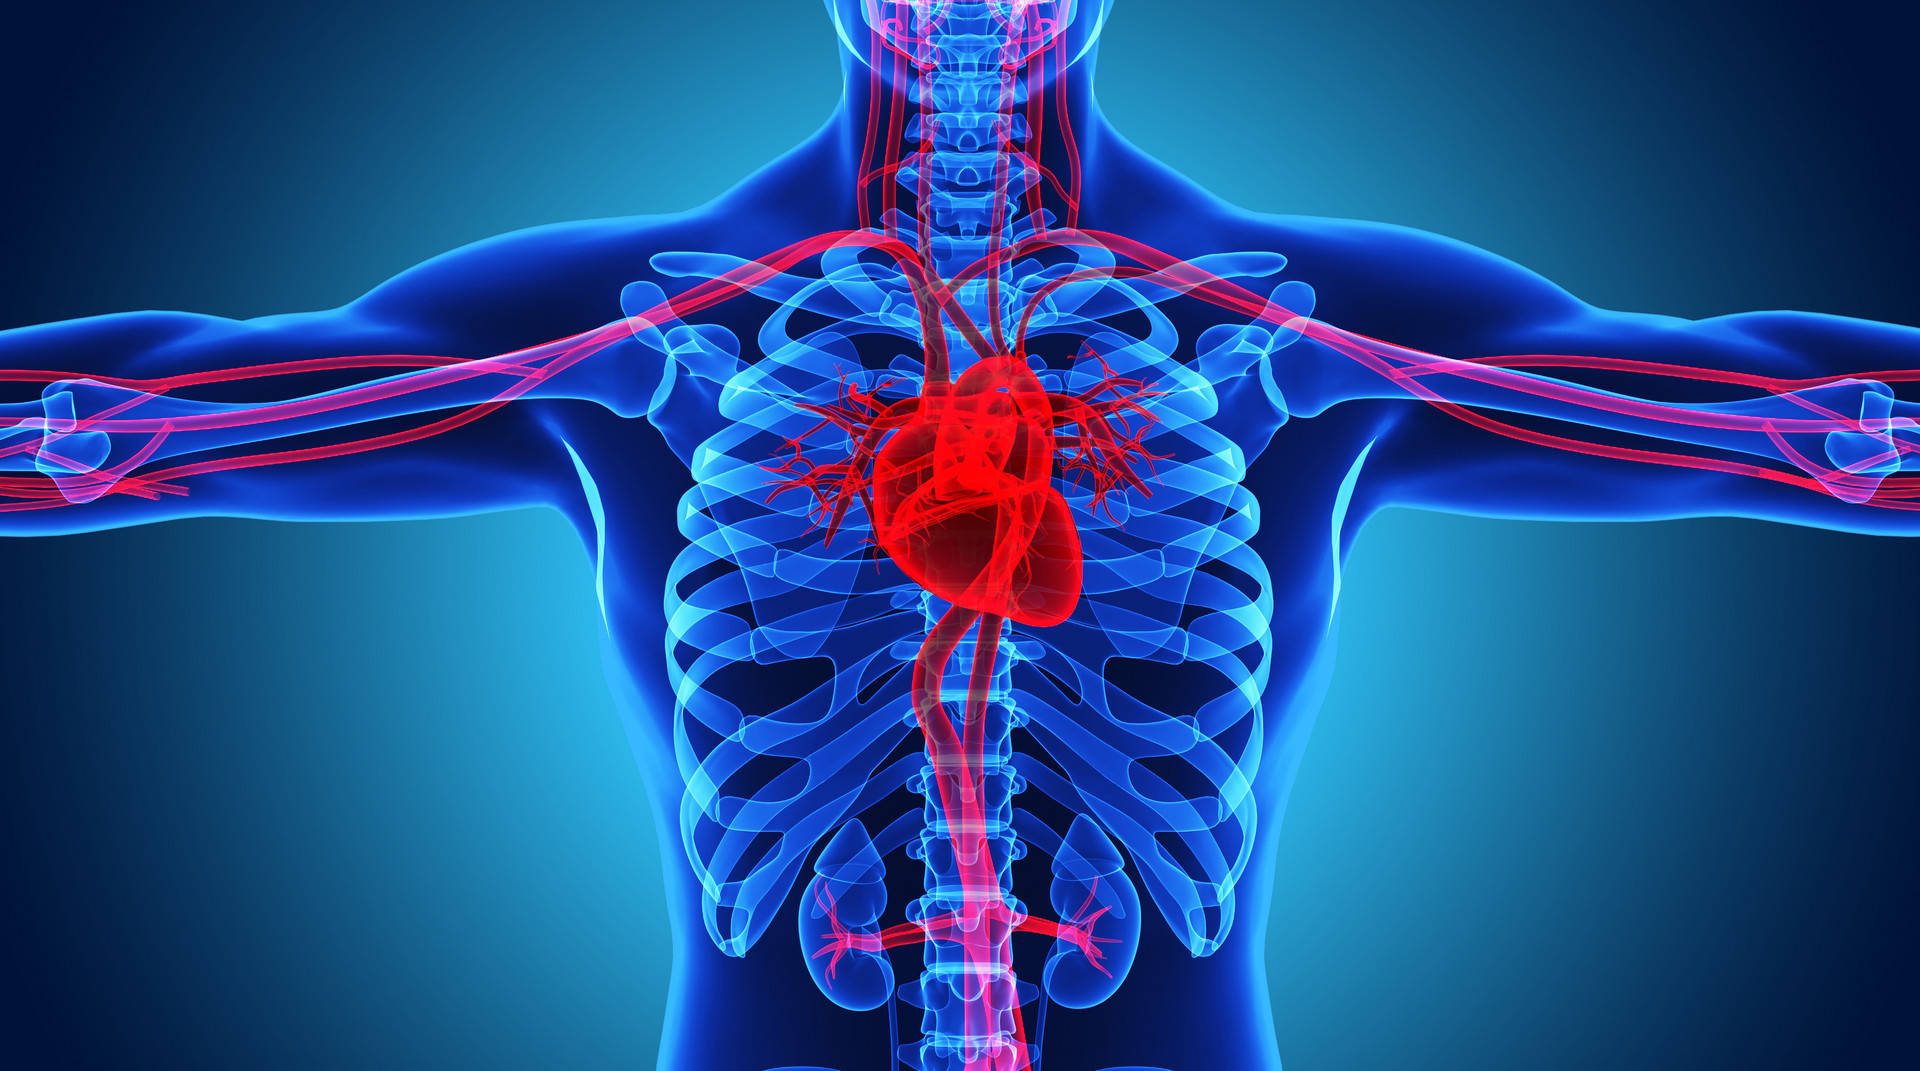 人体心脏部位置图图片